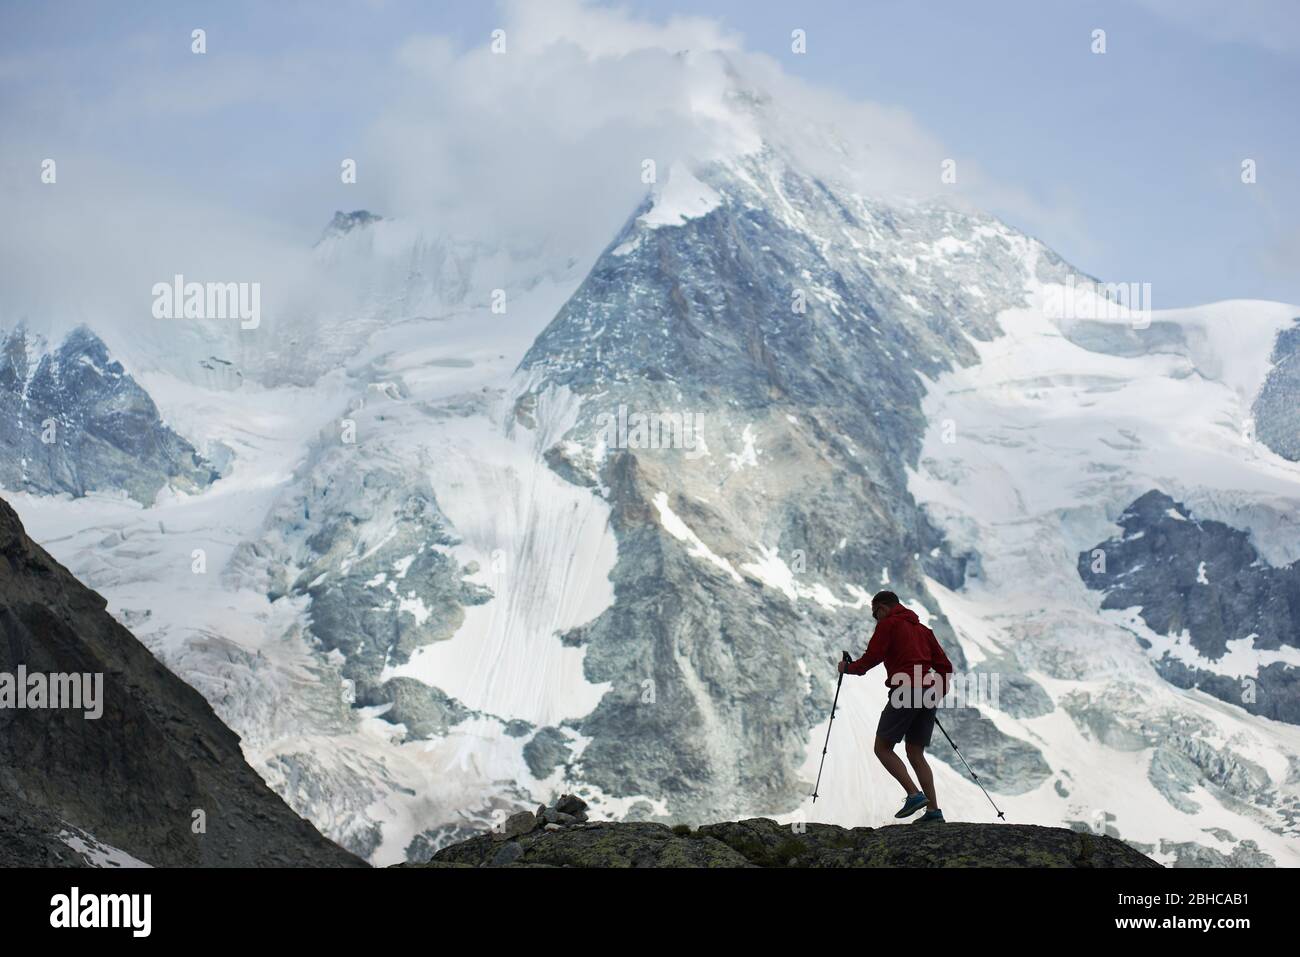 Randonneurs mâles grimpant avec des bâtons de randonnée. Magnifique montagne rocheuse dans la neige dans les Alpes Pennine sur fond. Randonnée dans la montagne, homme atteignant le sommet. Nature sauvage avec une vue incroyable. Le tourisme sportif dans les Alpes. Banque D'Images